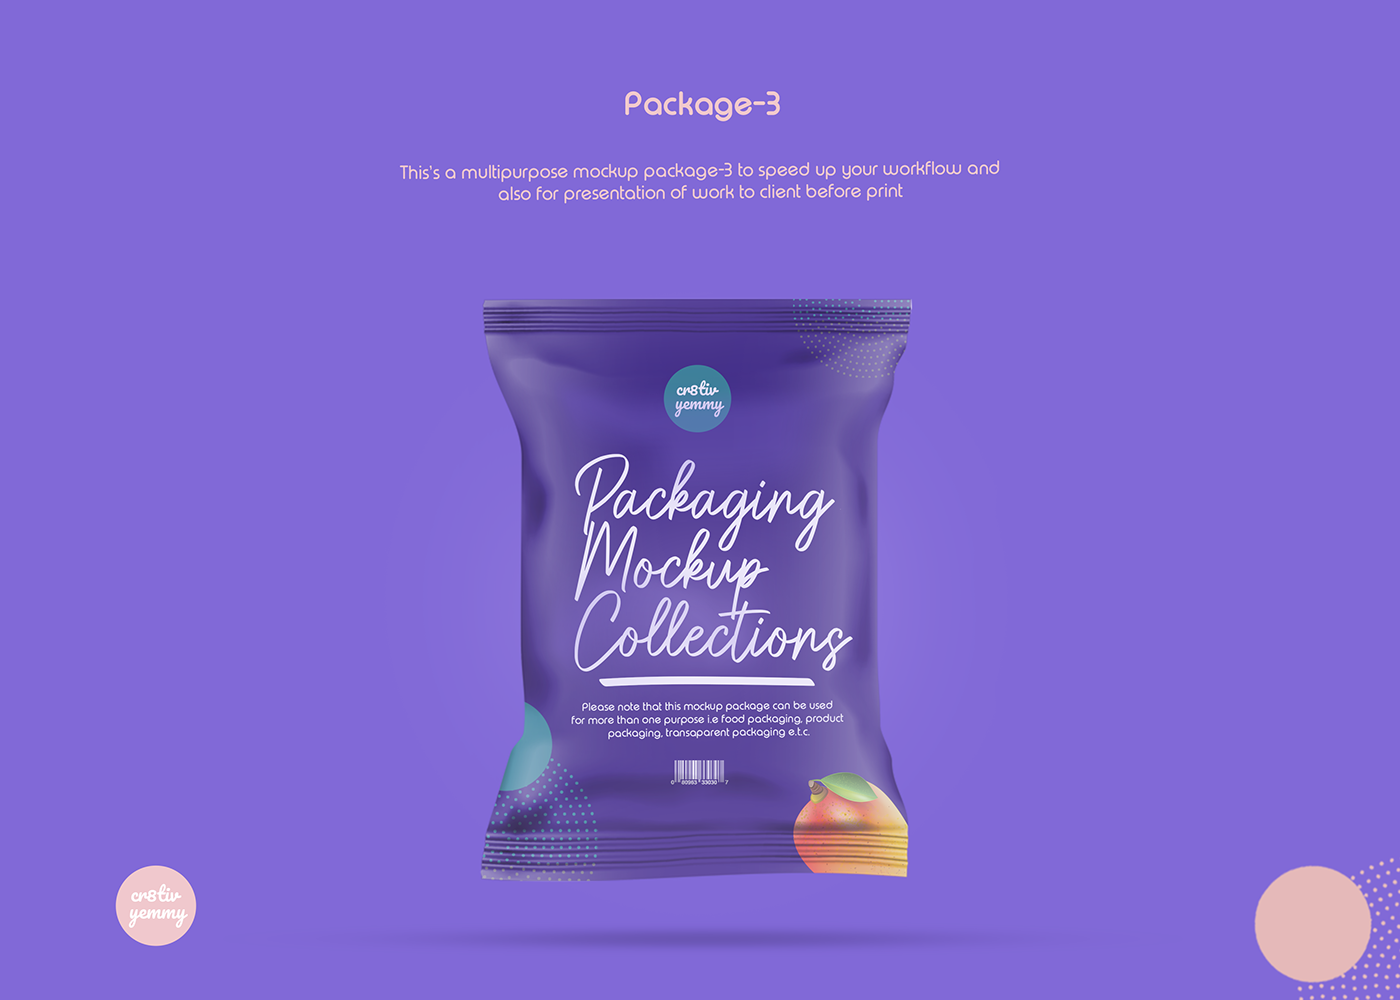 mockups photoshop resources packaging mockup Freebies PSD food packaging mockups PSD Freebies free download design community